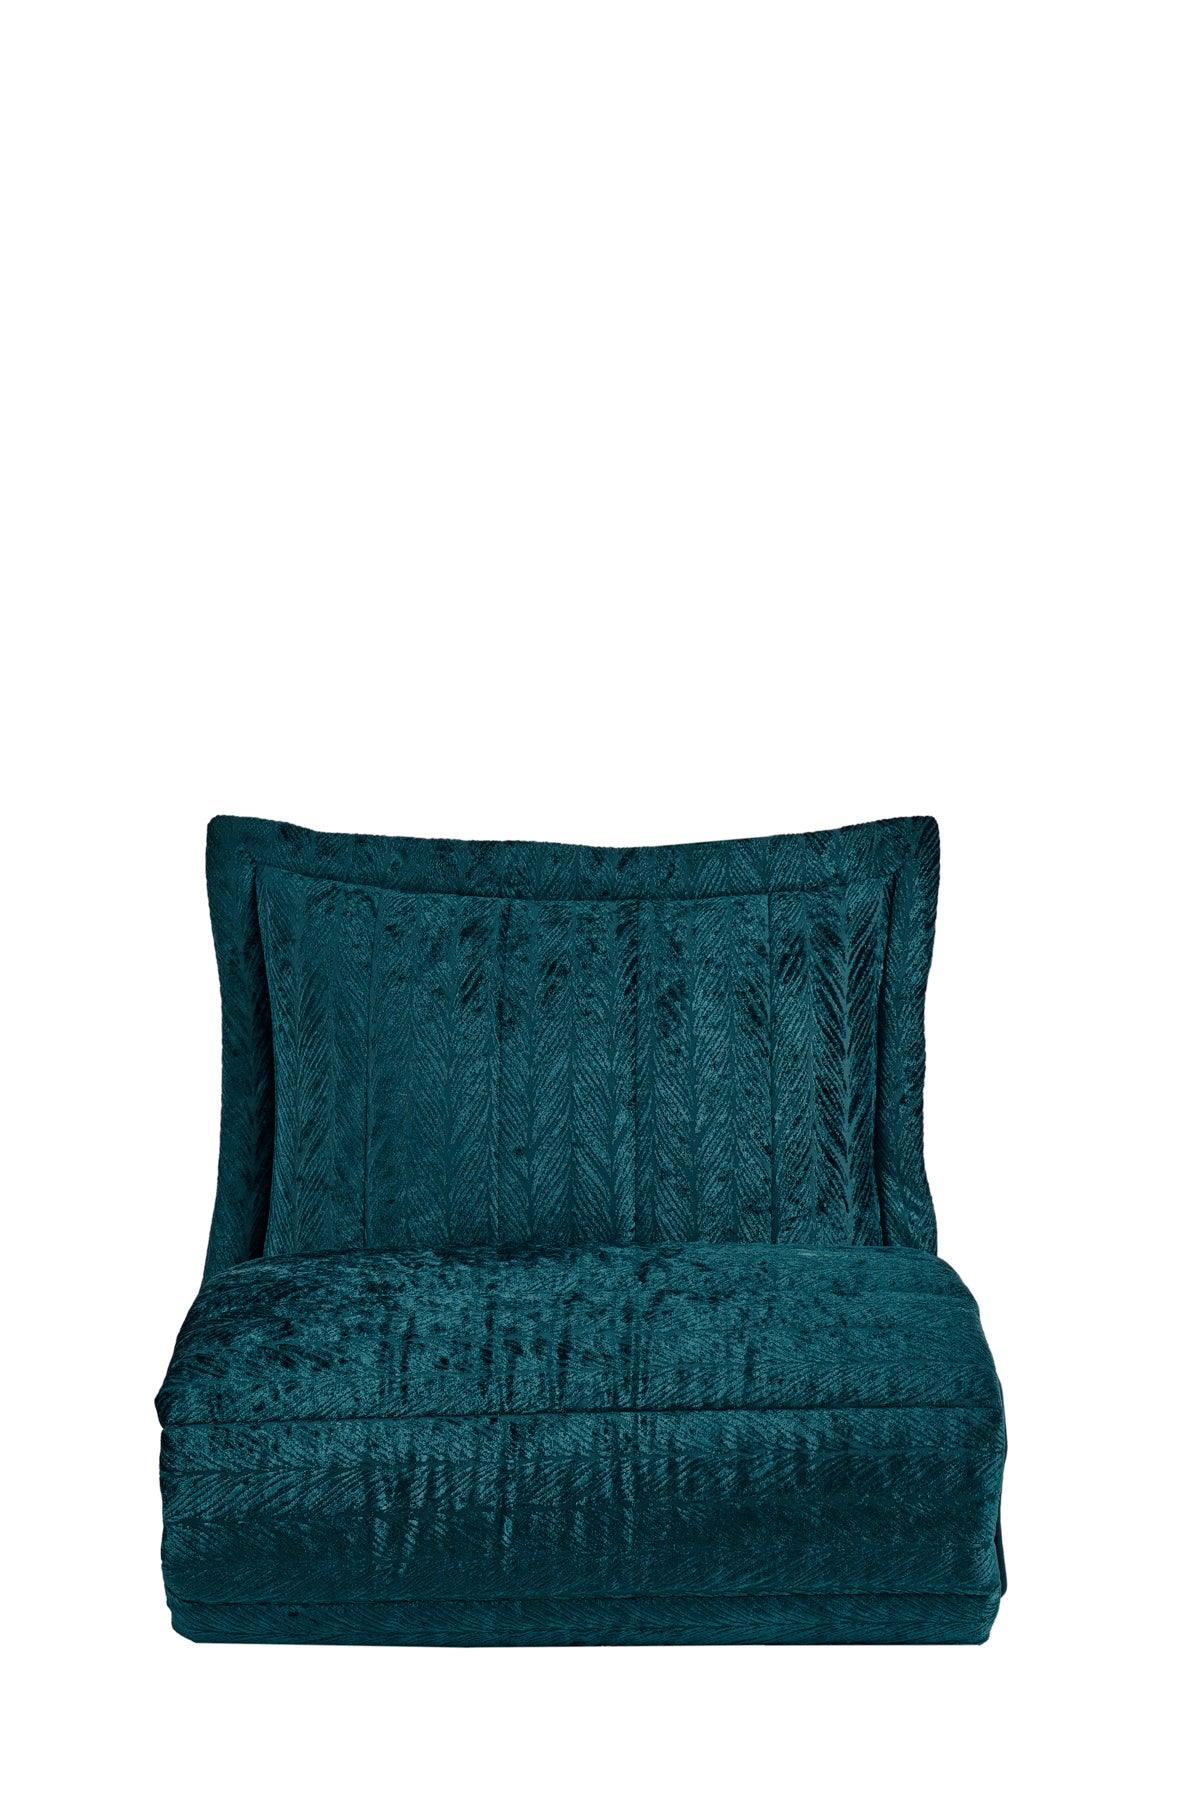 Comfort yeni nesil uykuseti - 6 parça Velvet Zümrüt Yeşili (230x220cm) - Elart Home